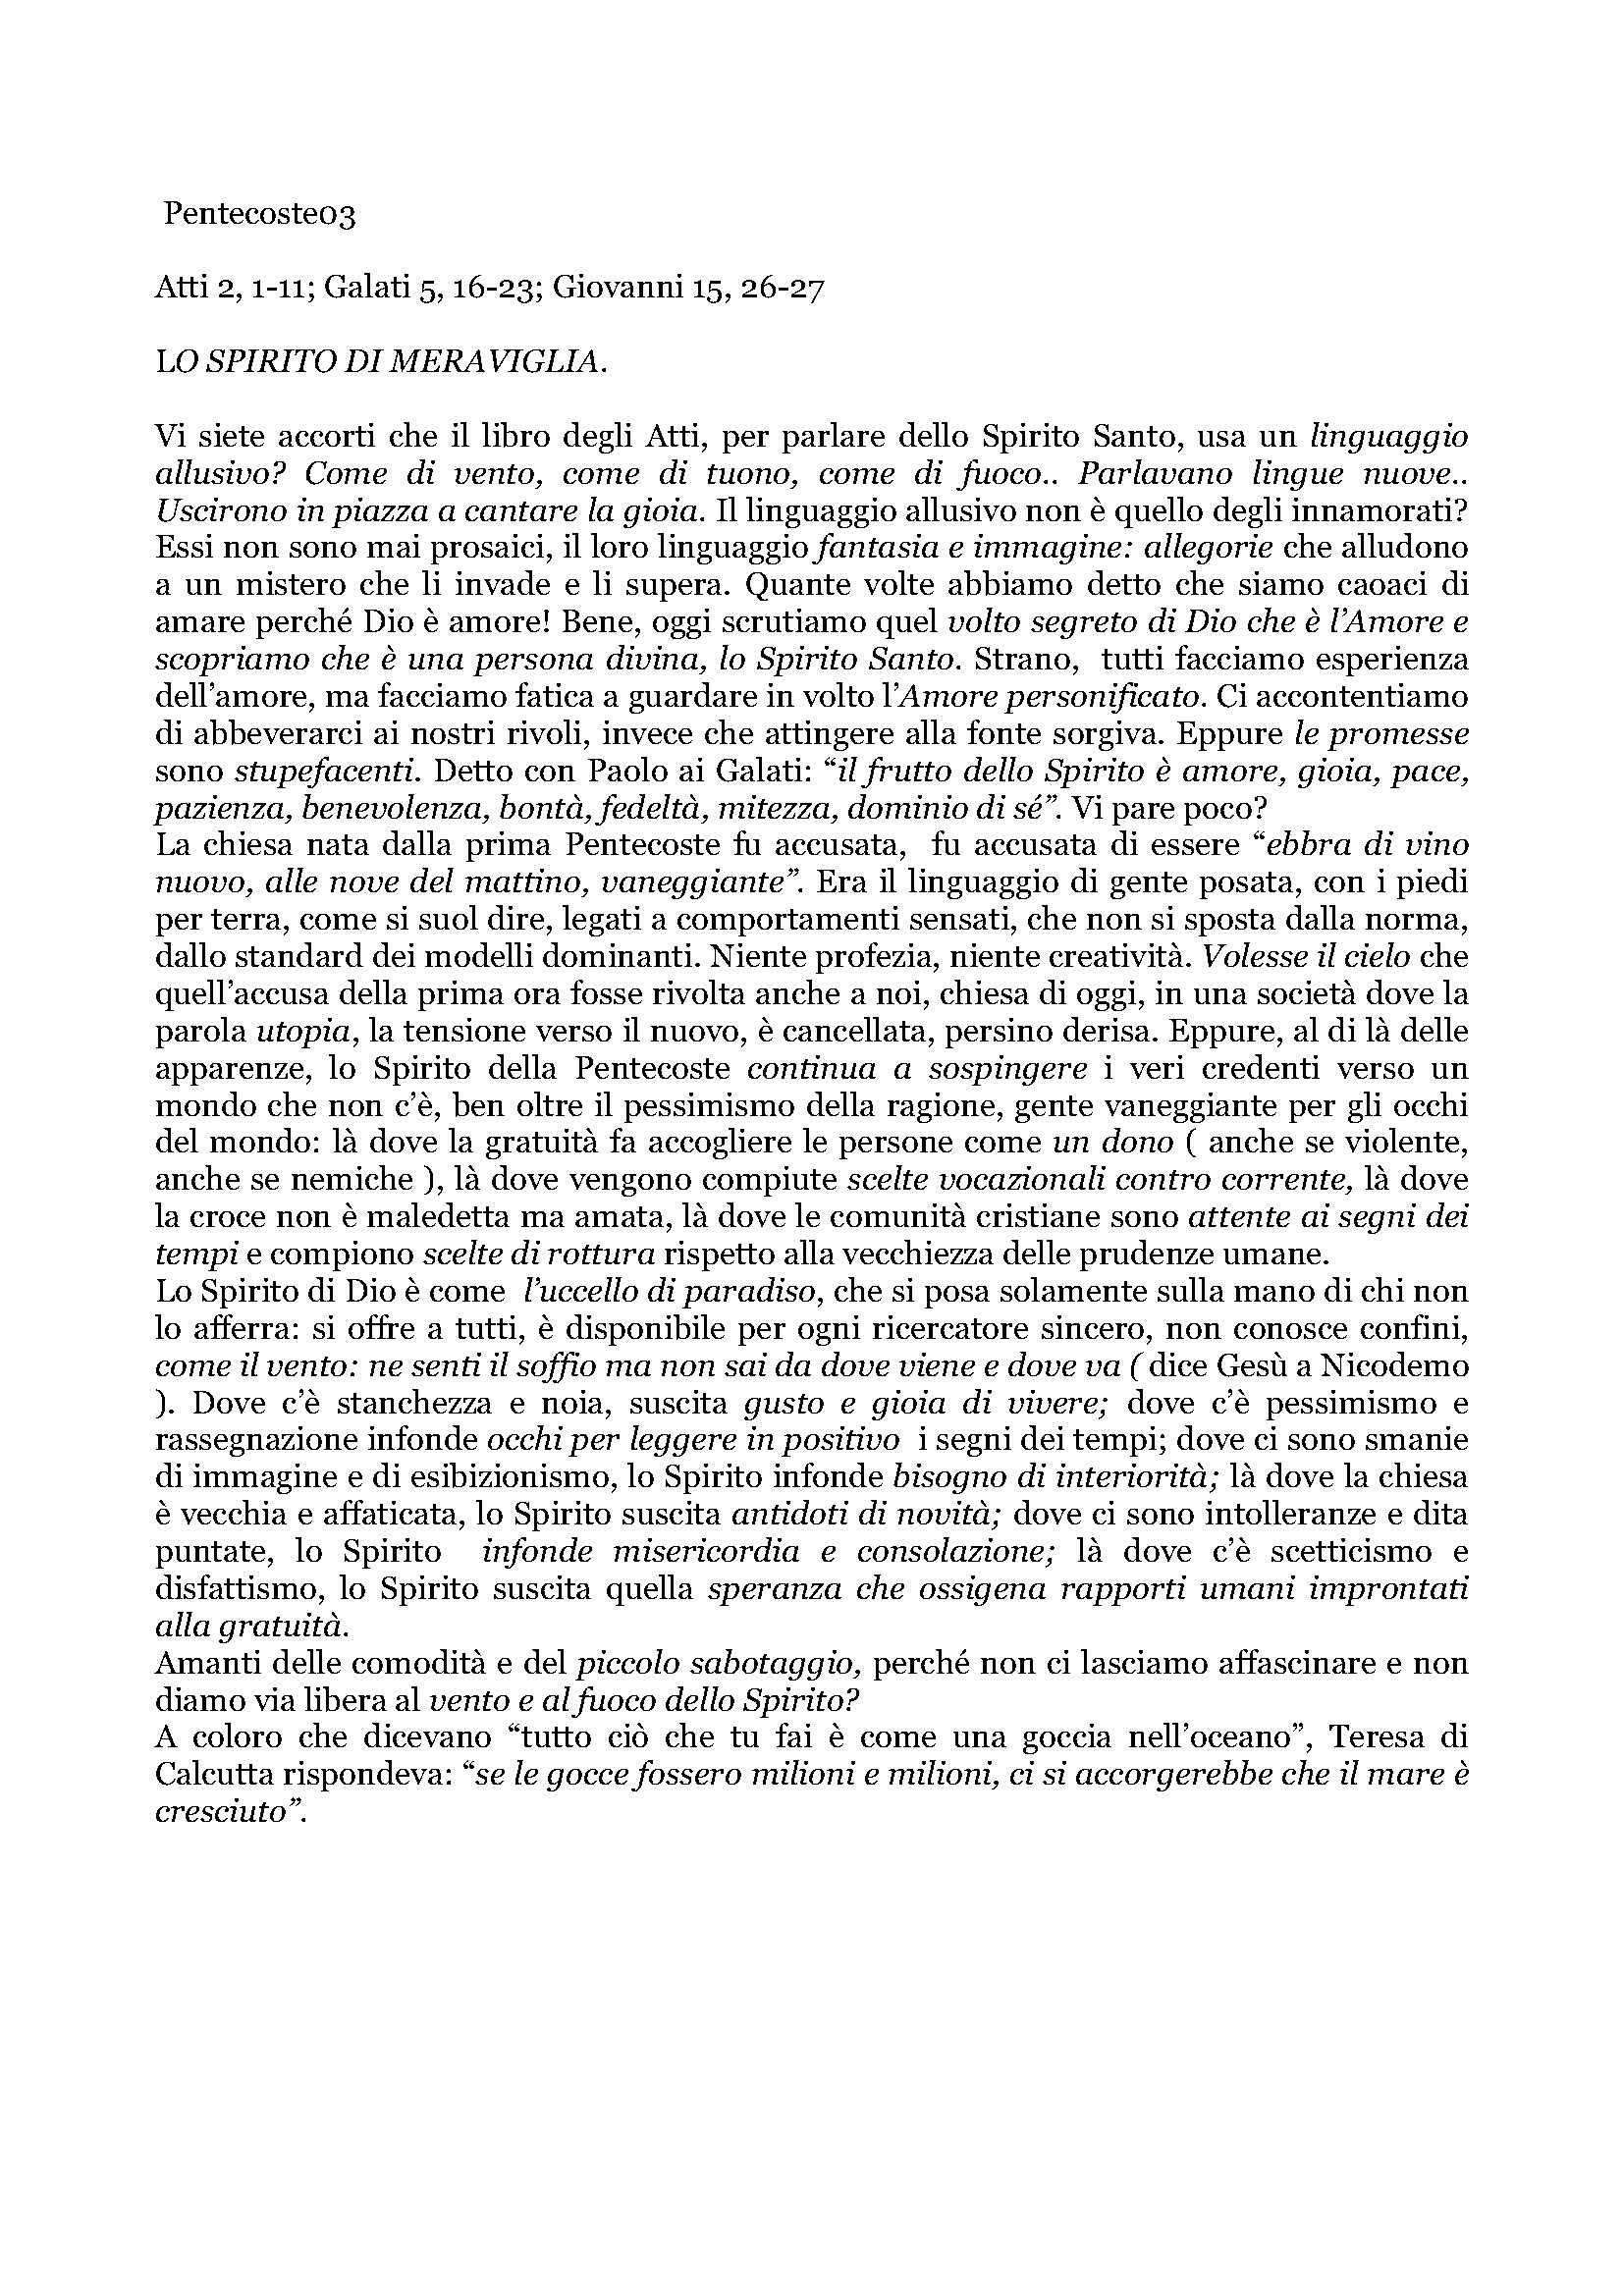 Pentecoste03_LO_SPIRITO_DI_MERAVIGLIA.pdf